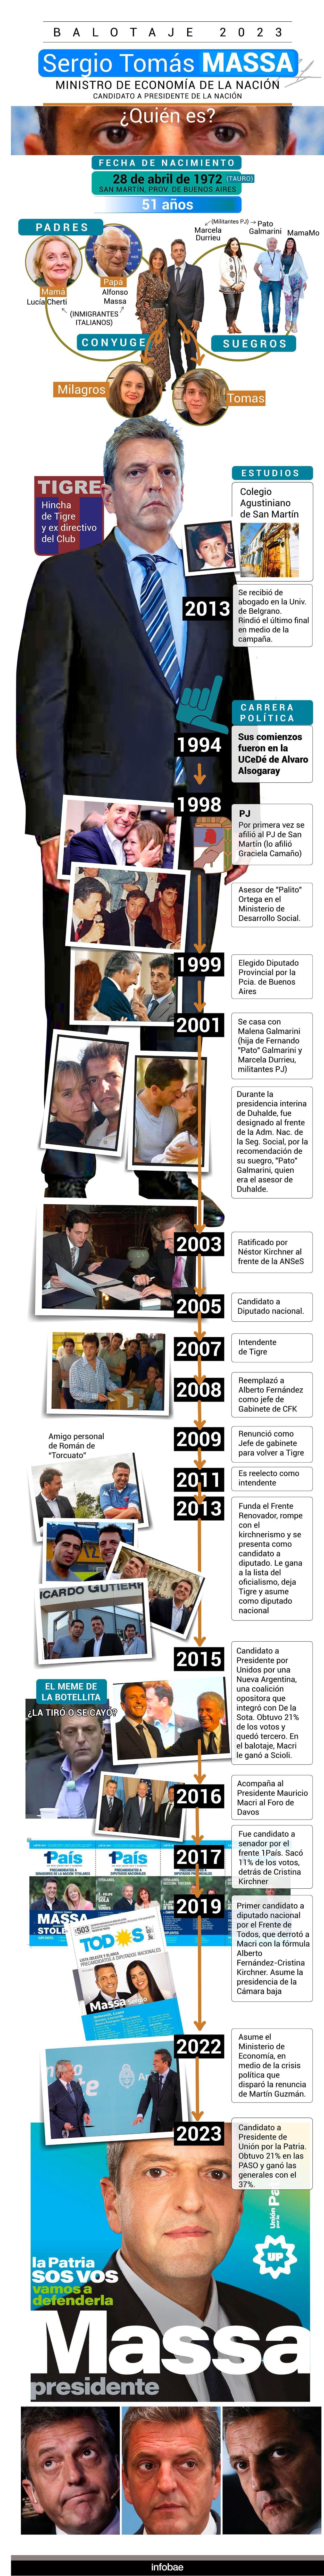 Un recorrido por la vida del ministro de Economía que busca ser presidente (Infografía: Marcelo Regalado)